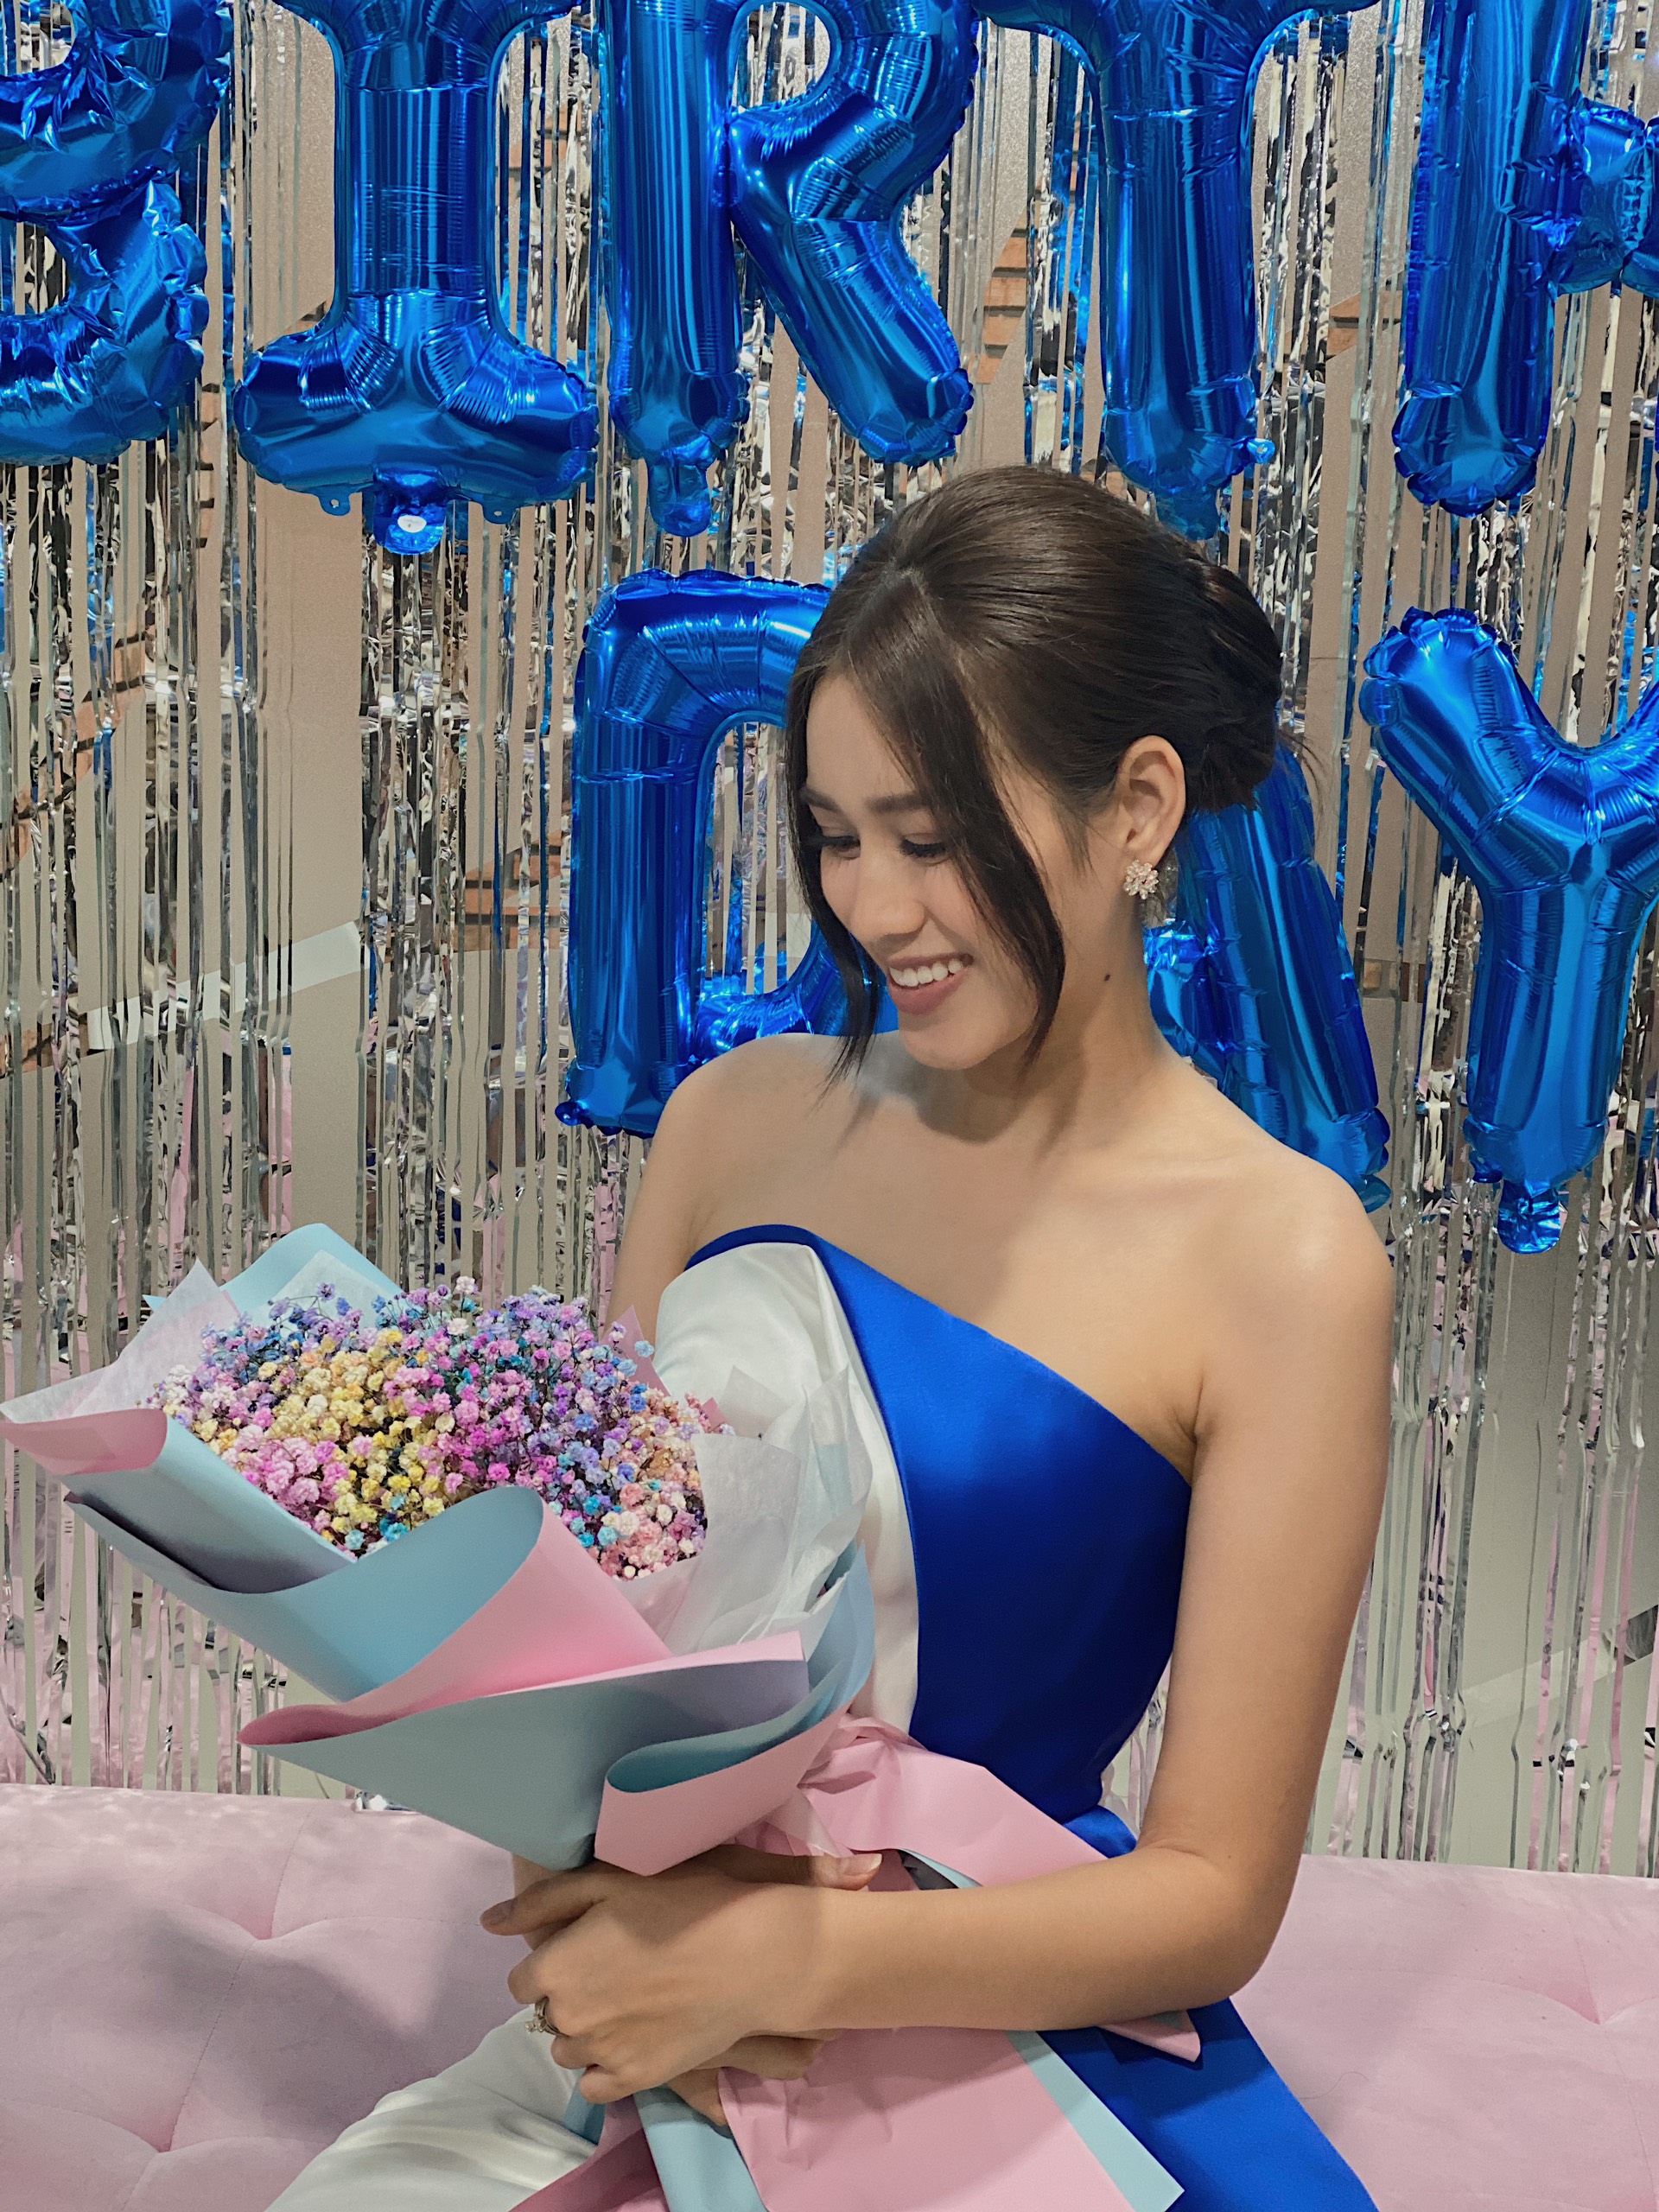 Hoa‌ ‌hậu‌ ‌Tiểu‌ ‌Vy‌ ‌“lột”‌ ‌trang‌ ‌sức‌ ‌hàng‌ ‌hiệu‌ ‌tặng‌ ‌sinh‌ ‌nhật‌ ‌Đỗ‌ ‌Hà‌ ‌ ‌ - ảnh 4